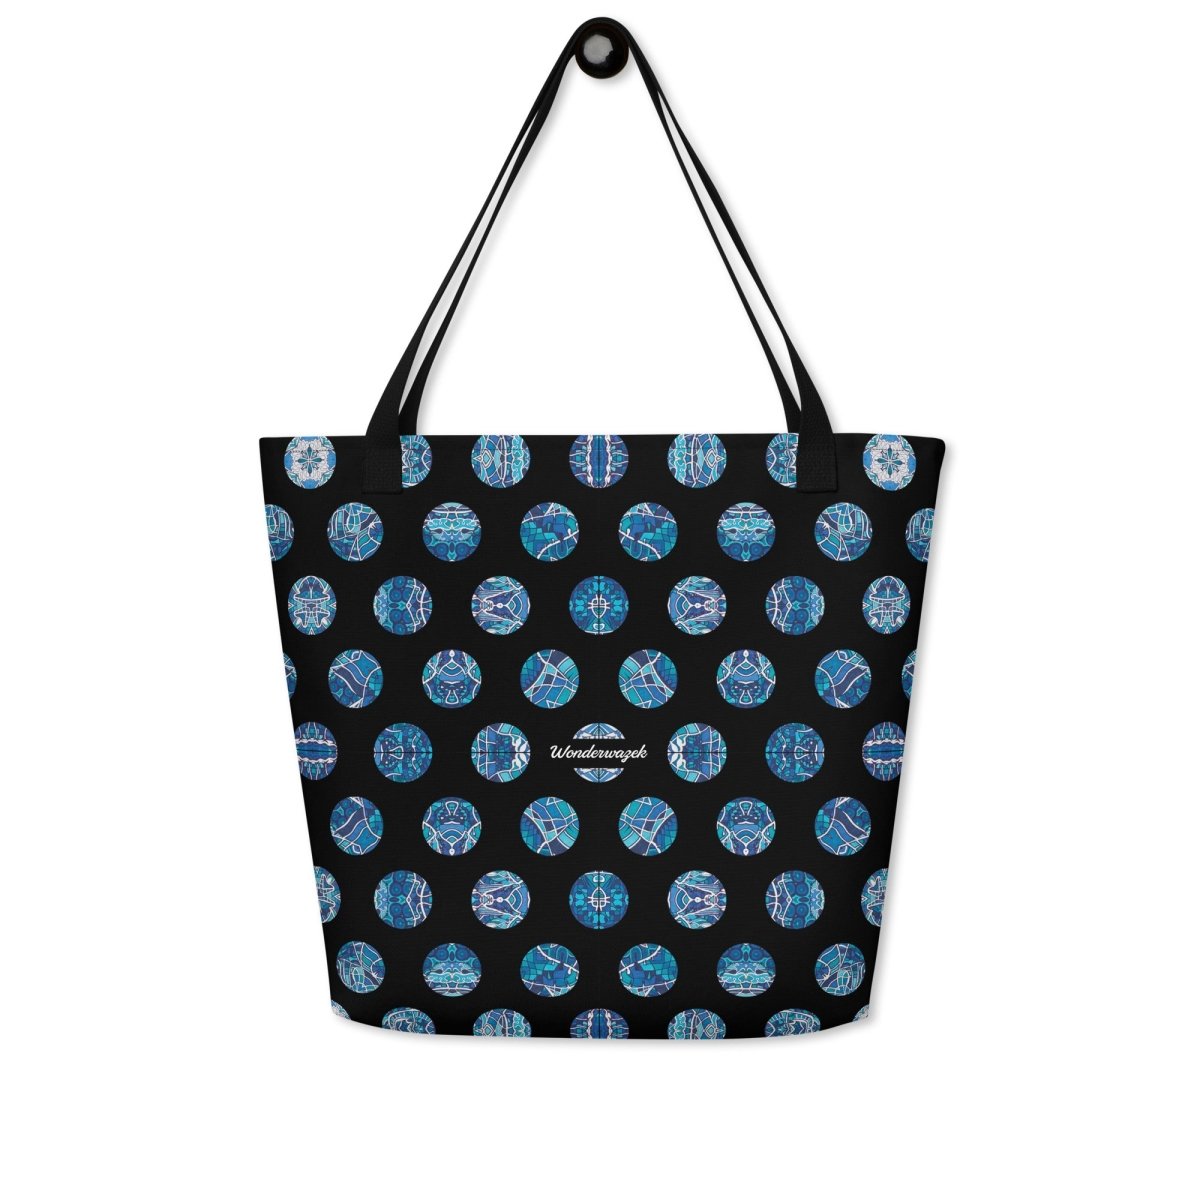 Strandtasche • Wassergeister – Punkte, blau, schwarz, weiß - Wonderwazek